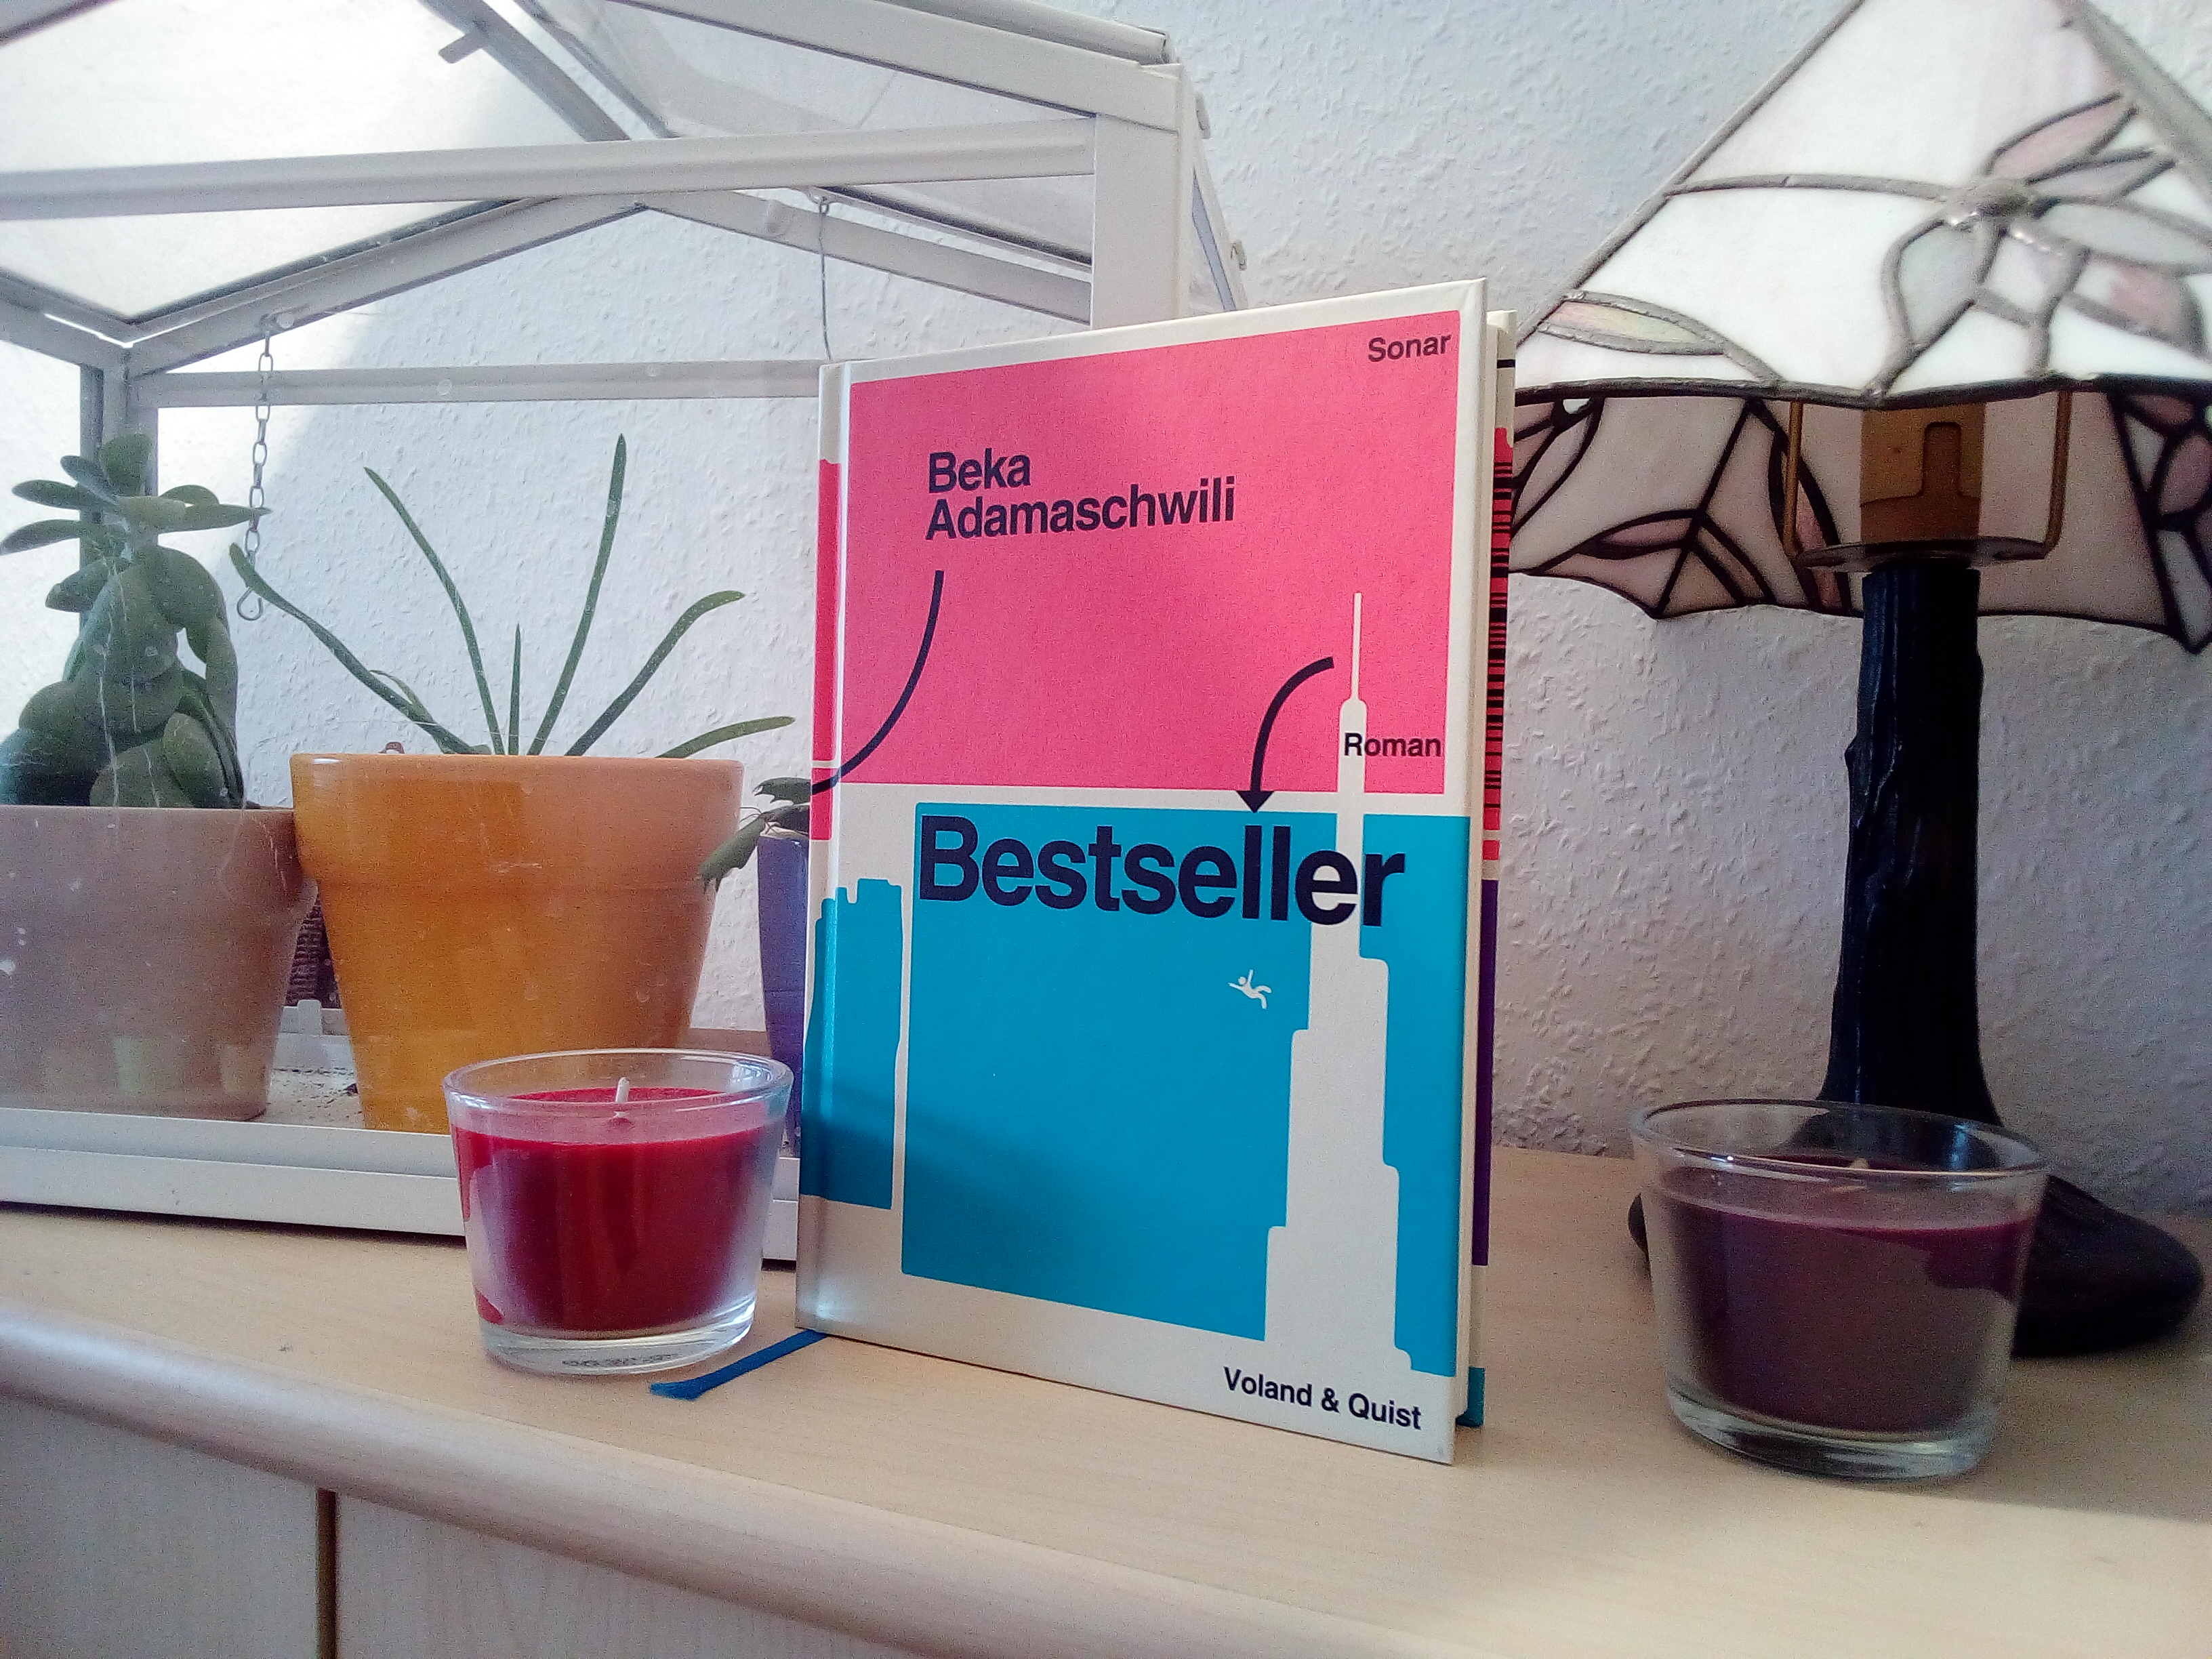 [BücherinBüchern] "Bestseller" von Beka Adamaschwili